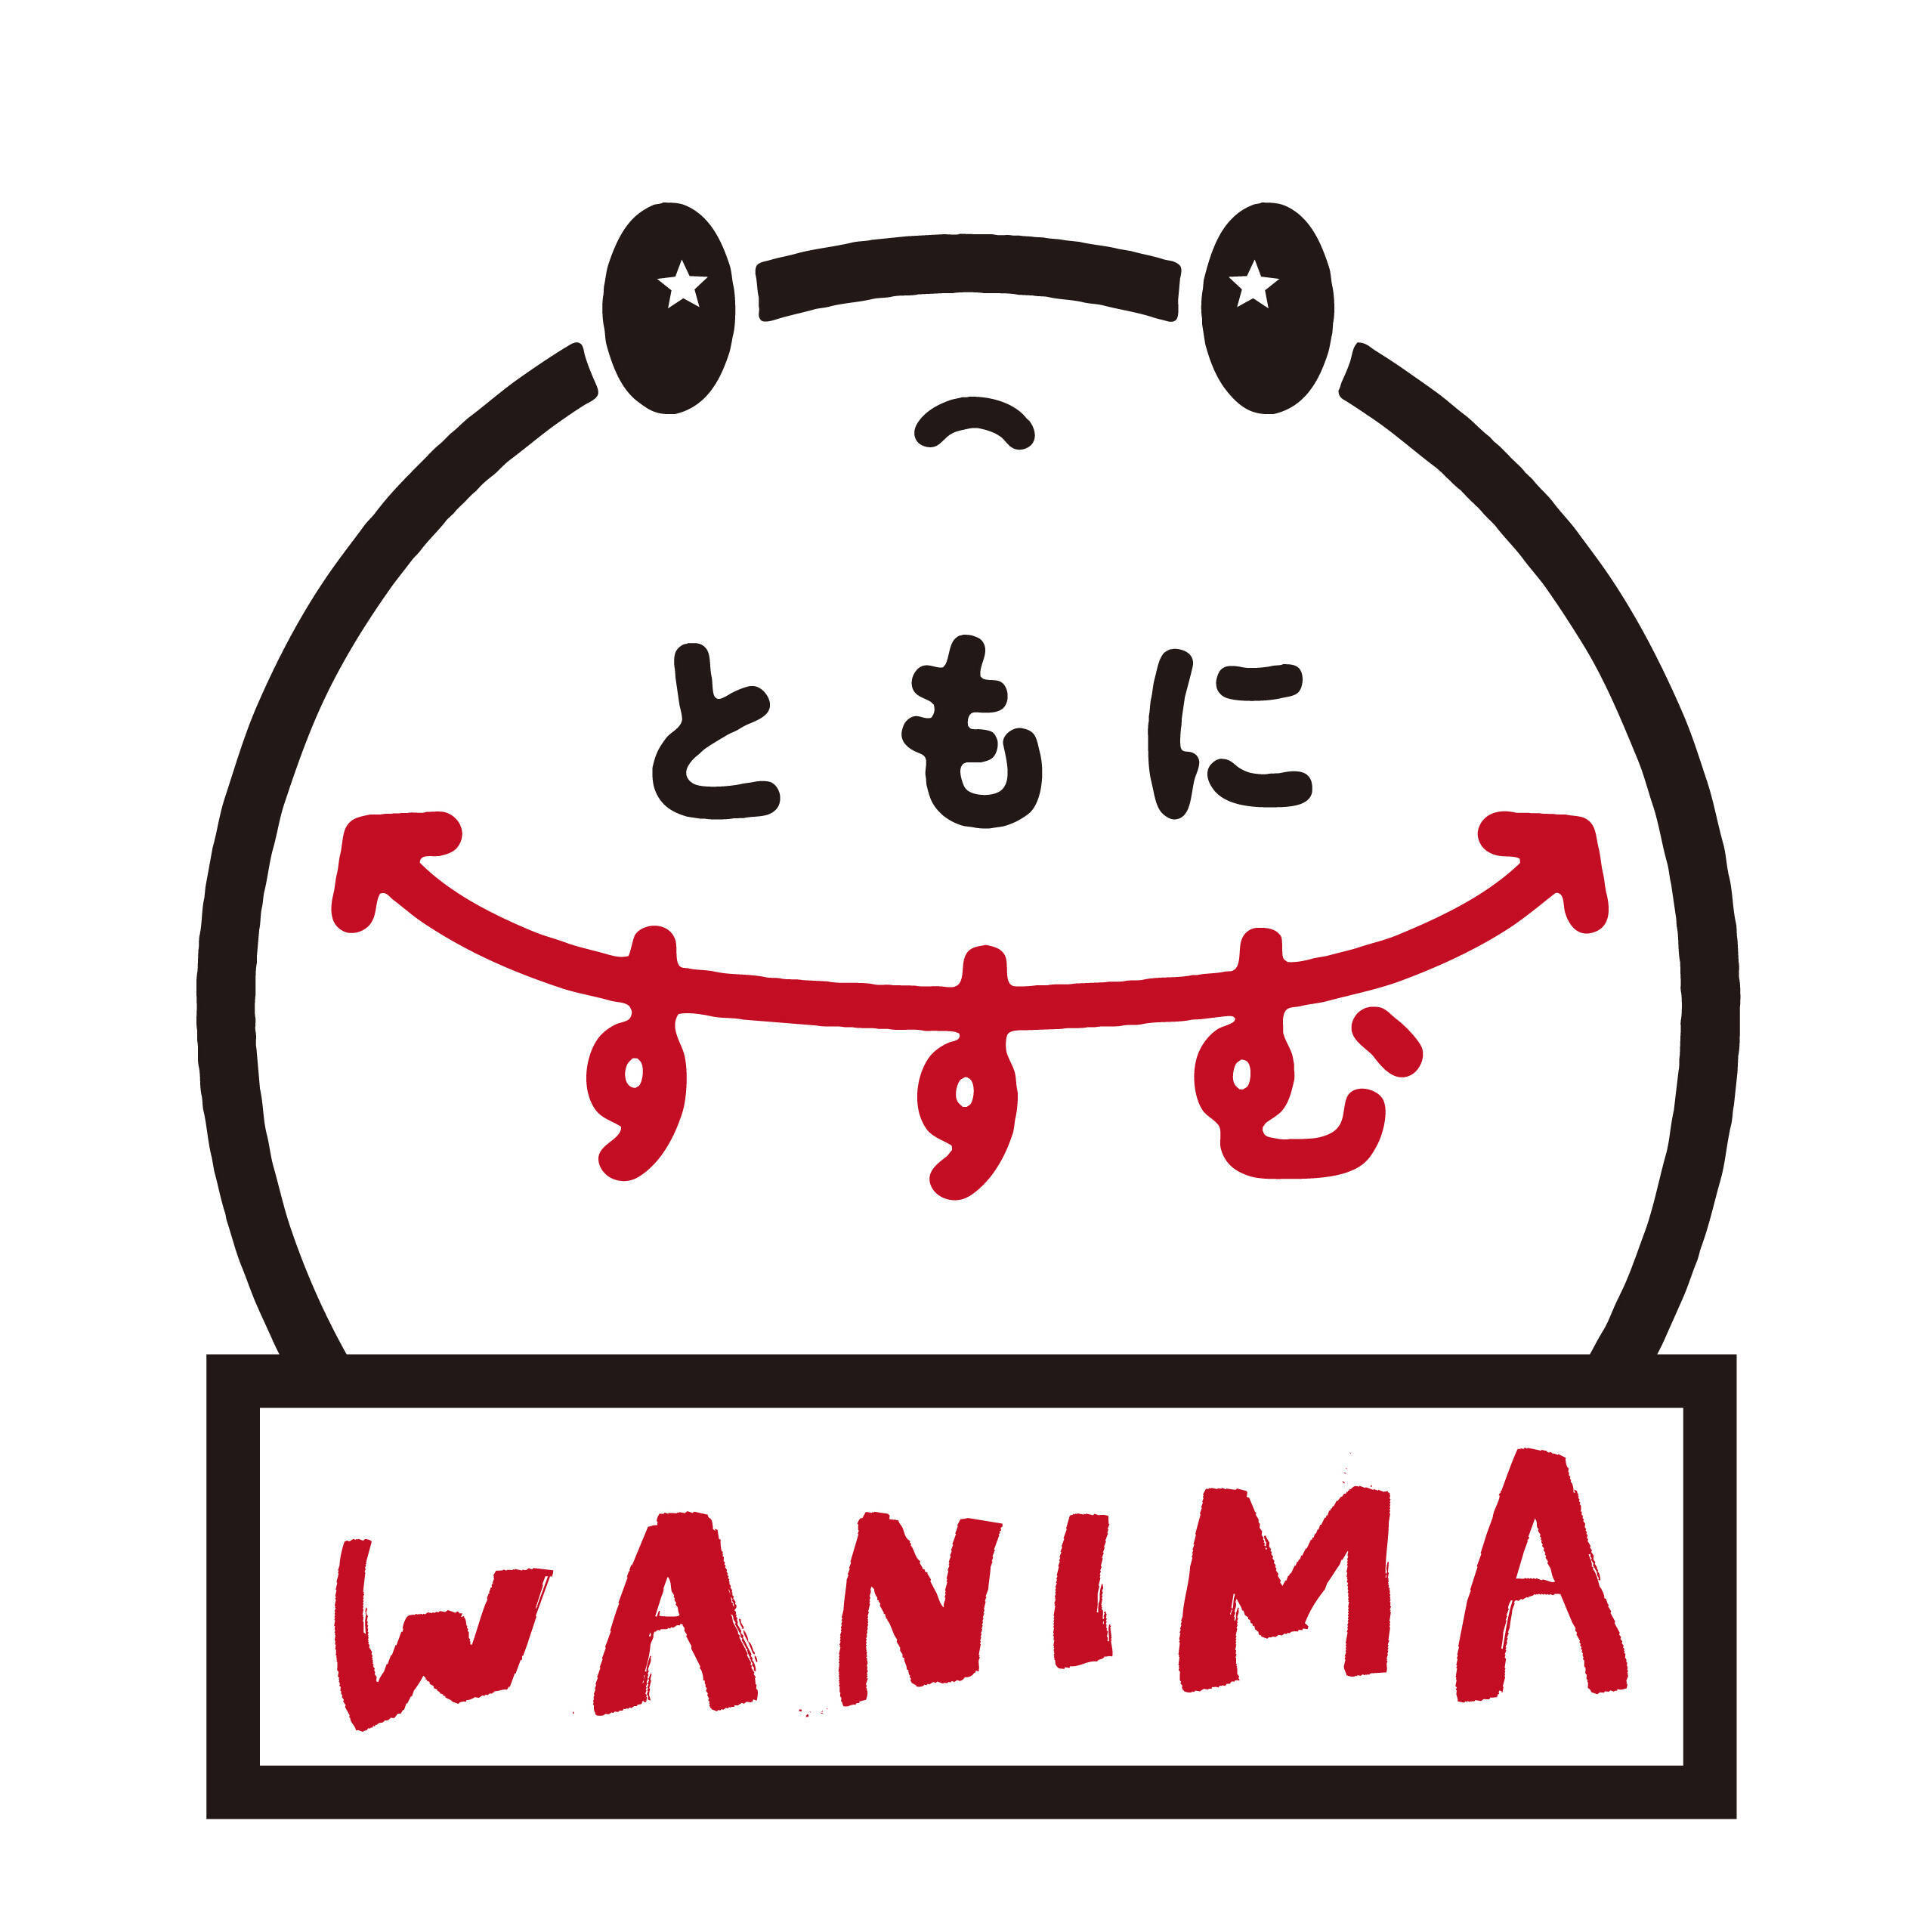 Wanima の代表曲 ともに 熊本復興ドラマの主題歌に決定 エキサイトニュース